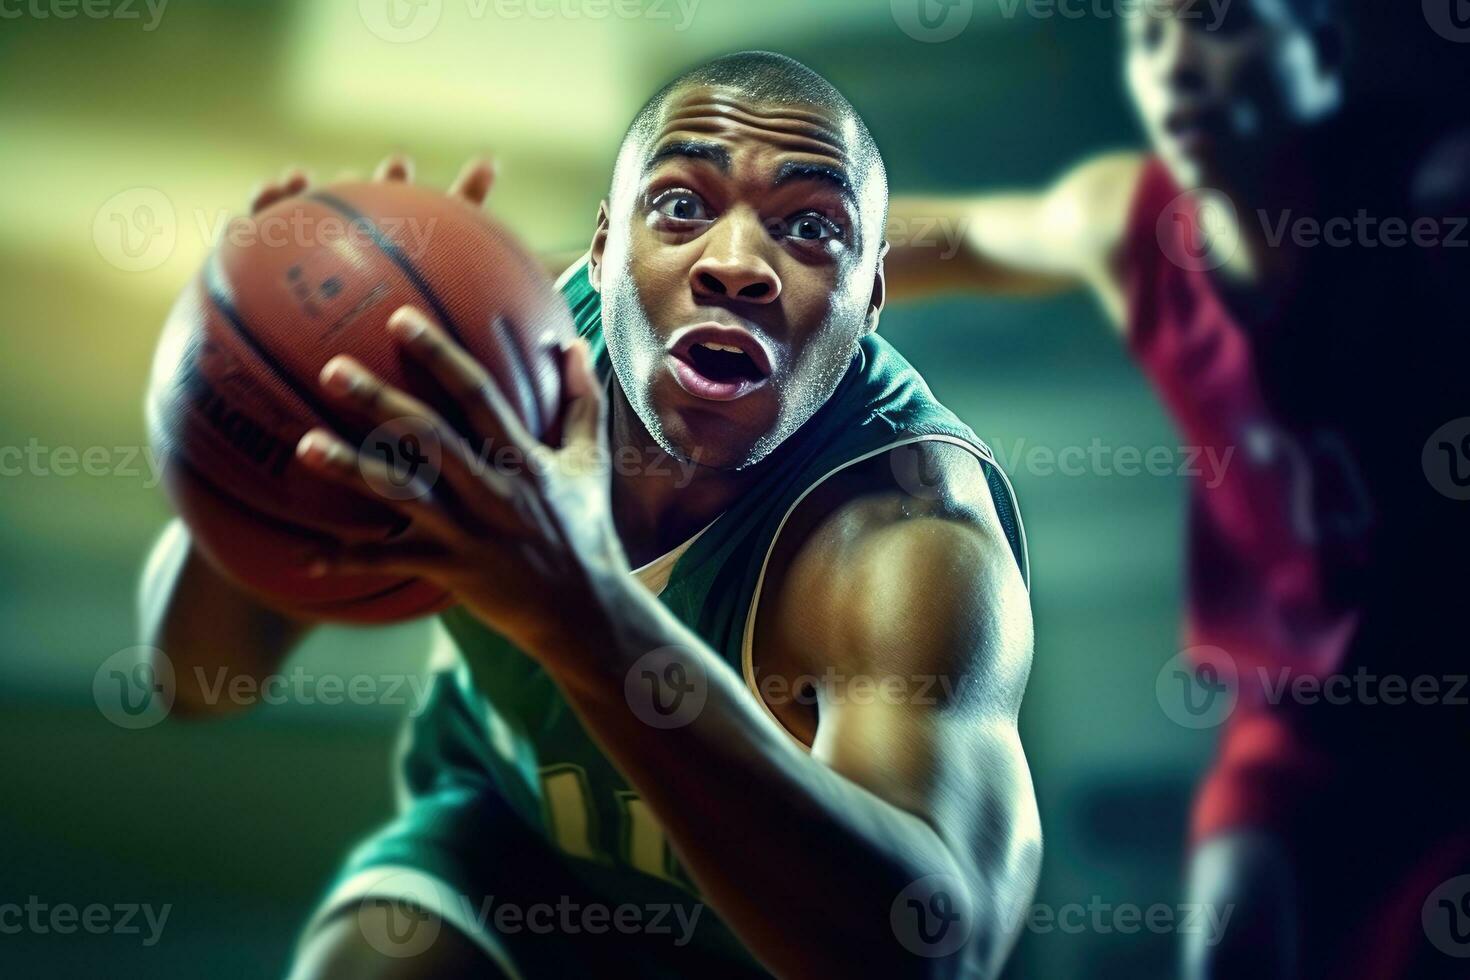 Homme Bel Dans Le Costume Avec La Boule De Basket-ball Image stock - Image  du beau, mode: 100329525